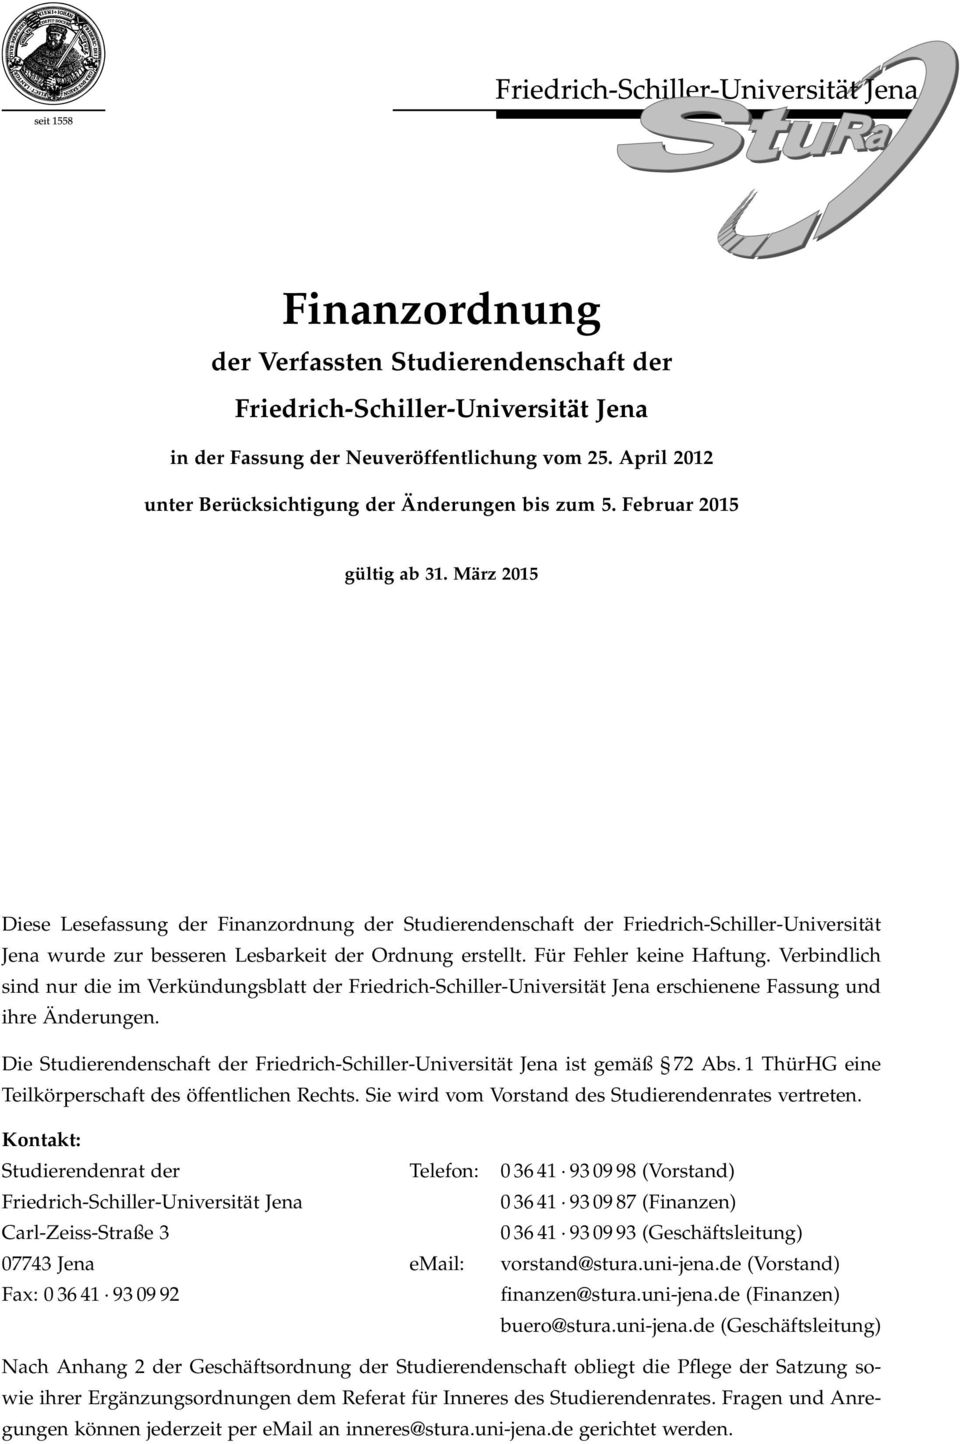 Für Fehler keine Haftung. Verbindlich sind nur die im Verkündungsblatt der Friedrich-Schiller-Universität Jena erschienene Fassung und ihre Änderungen.